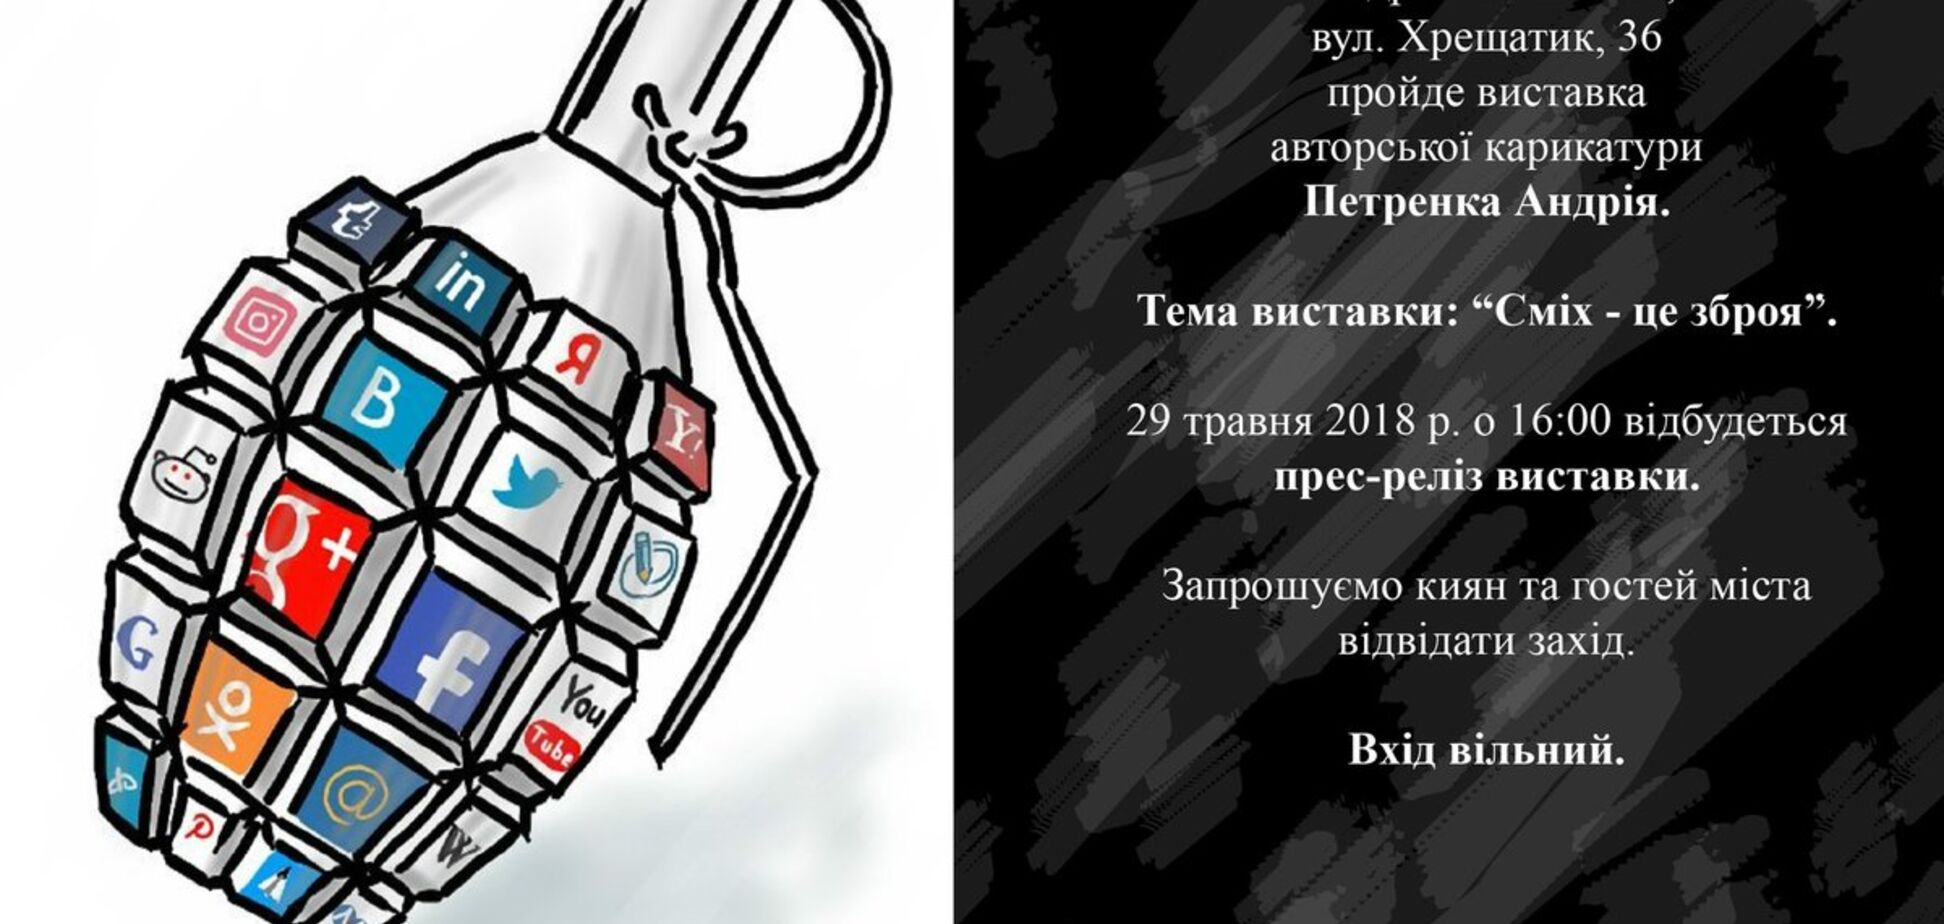 'Сміх - це зброя': відомий карикатурист покаже роботи у Києві